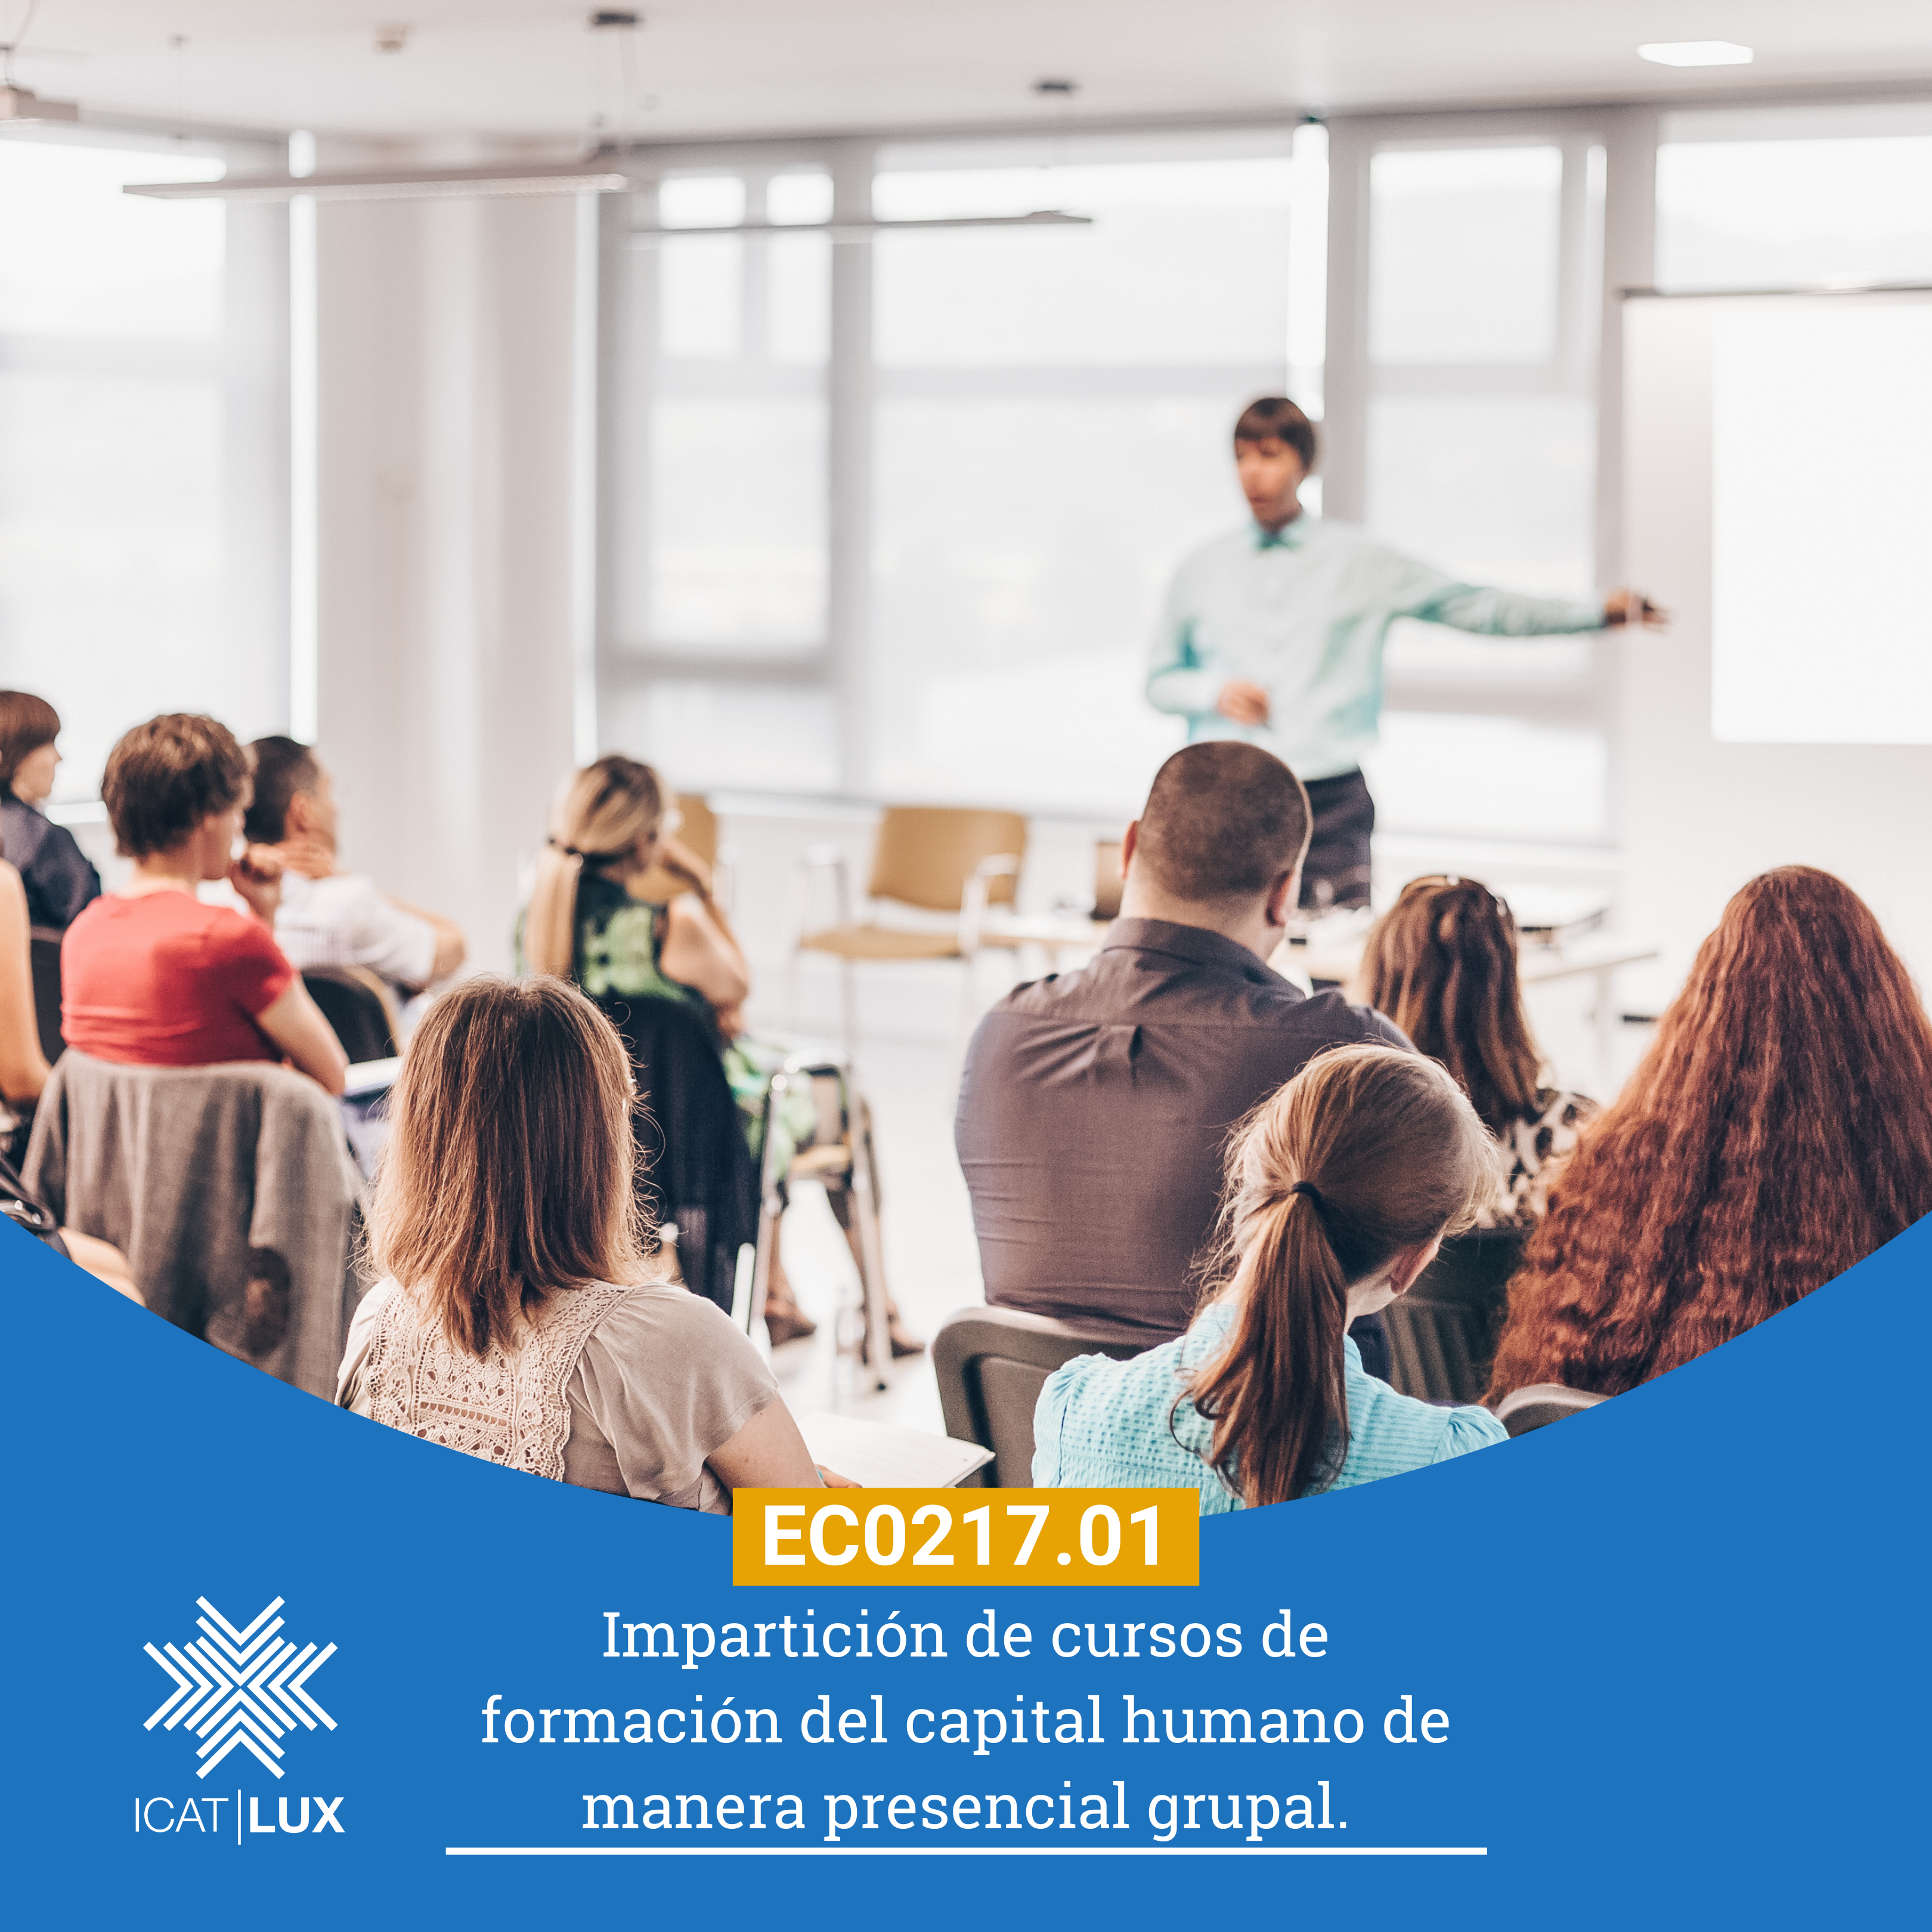 EC0217.01 – Impartición de cursos de formación del capital humano de manera presencial grupal.